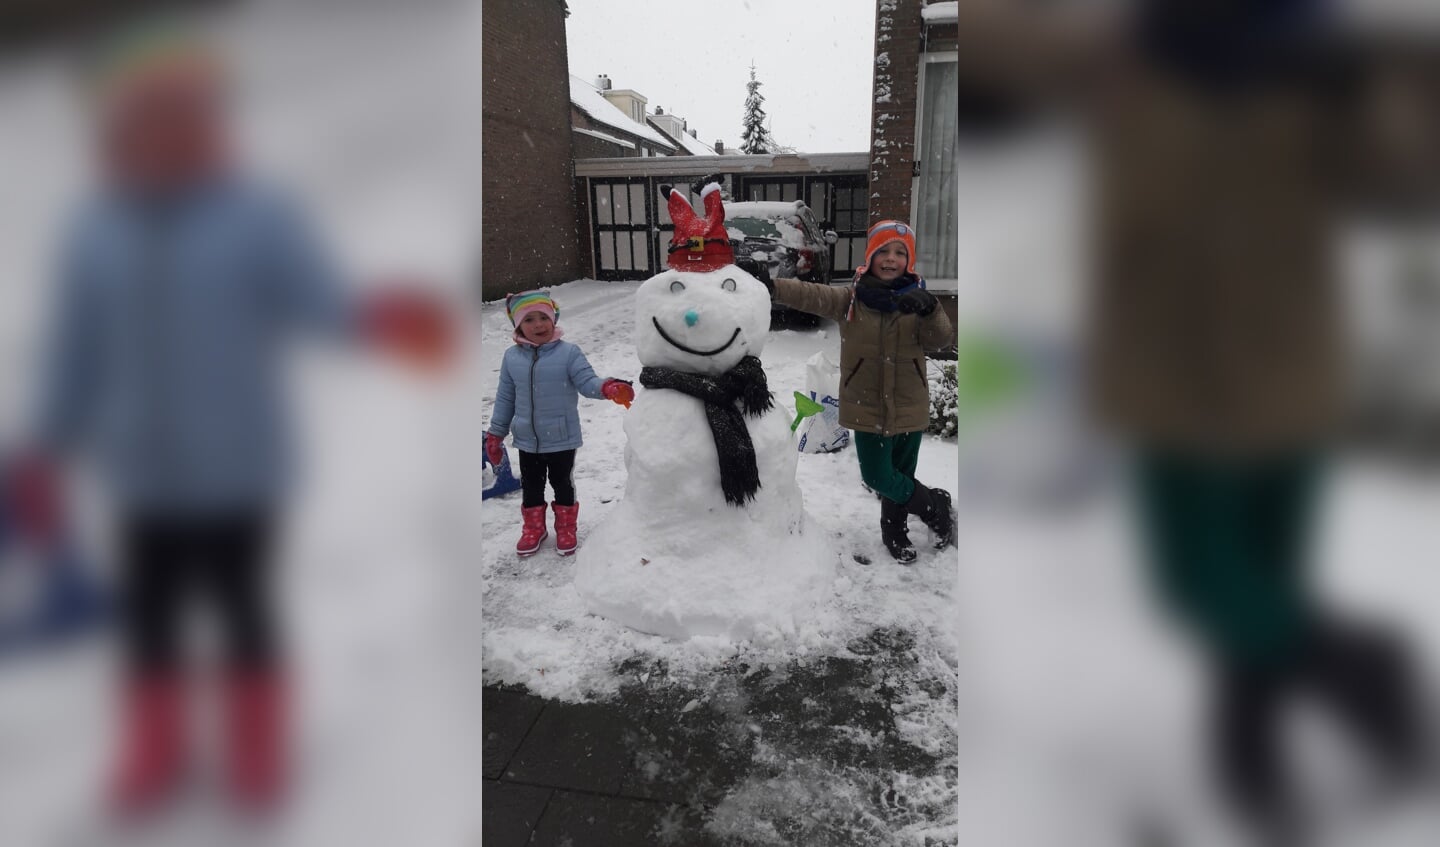 Stijn en Daphne Nelissen maakten een mooie sneeuwpop. (Foto: Kristel)